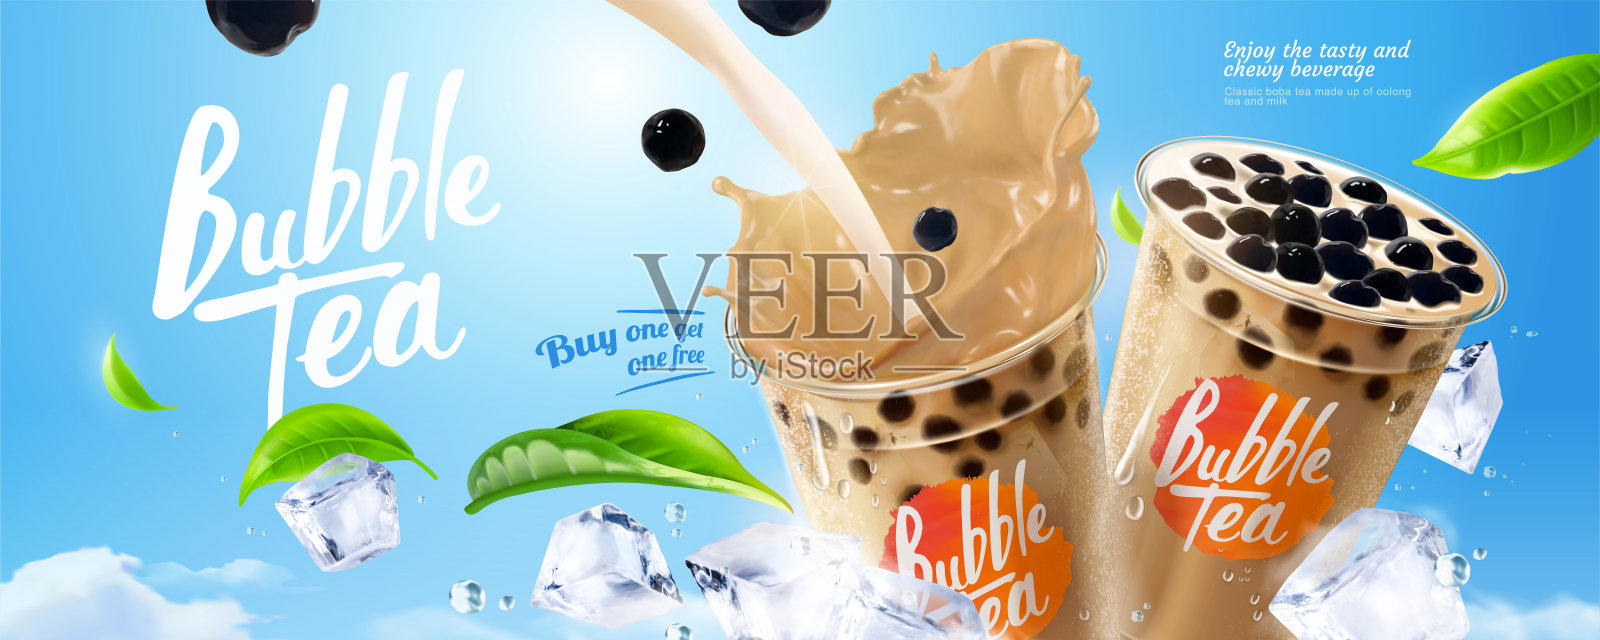 珍珠奶茶广告设计模板素材